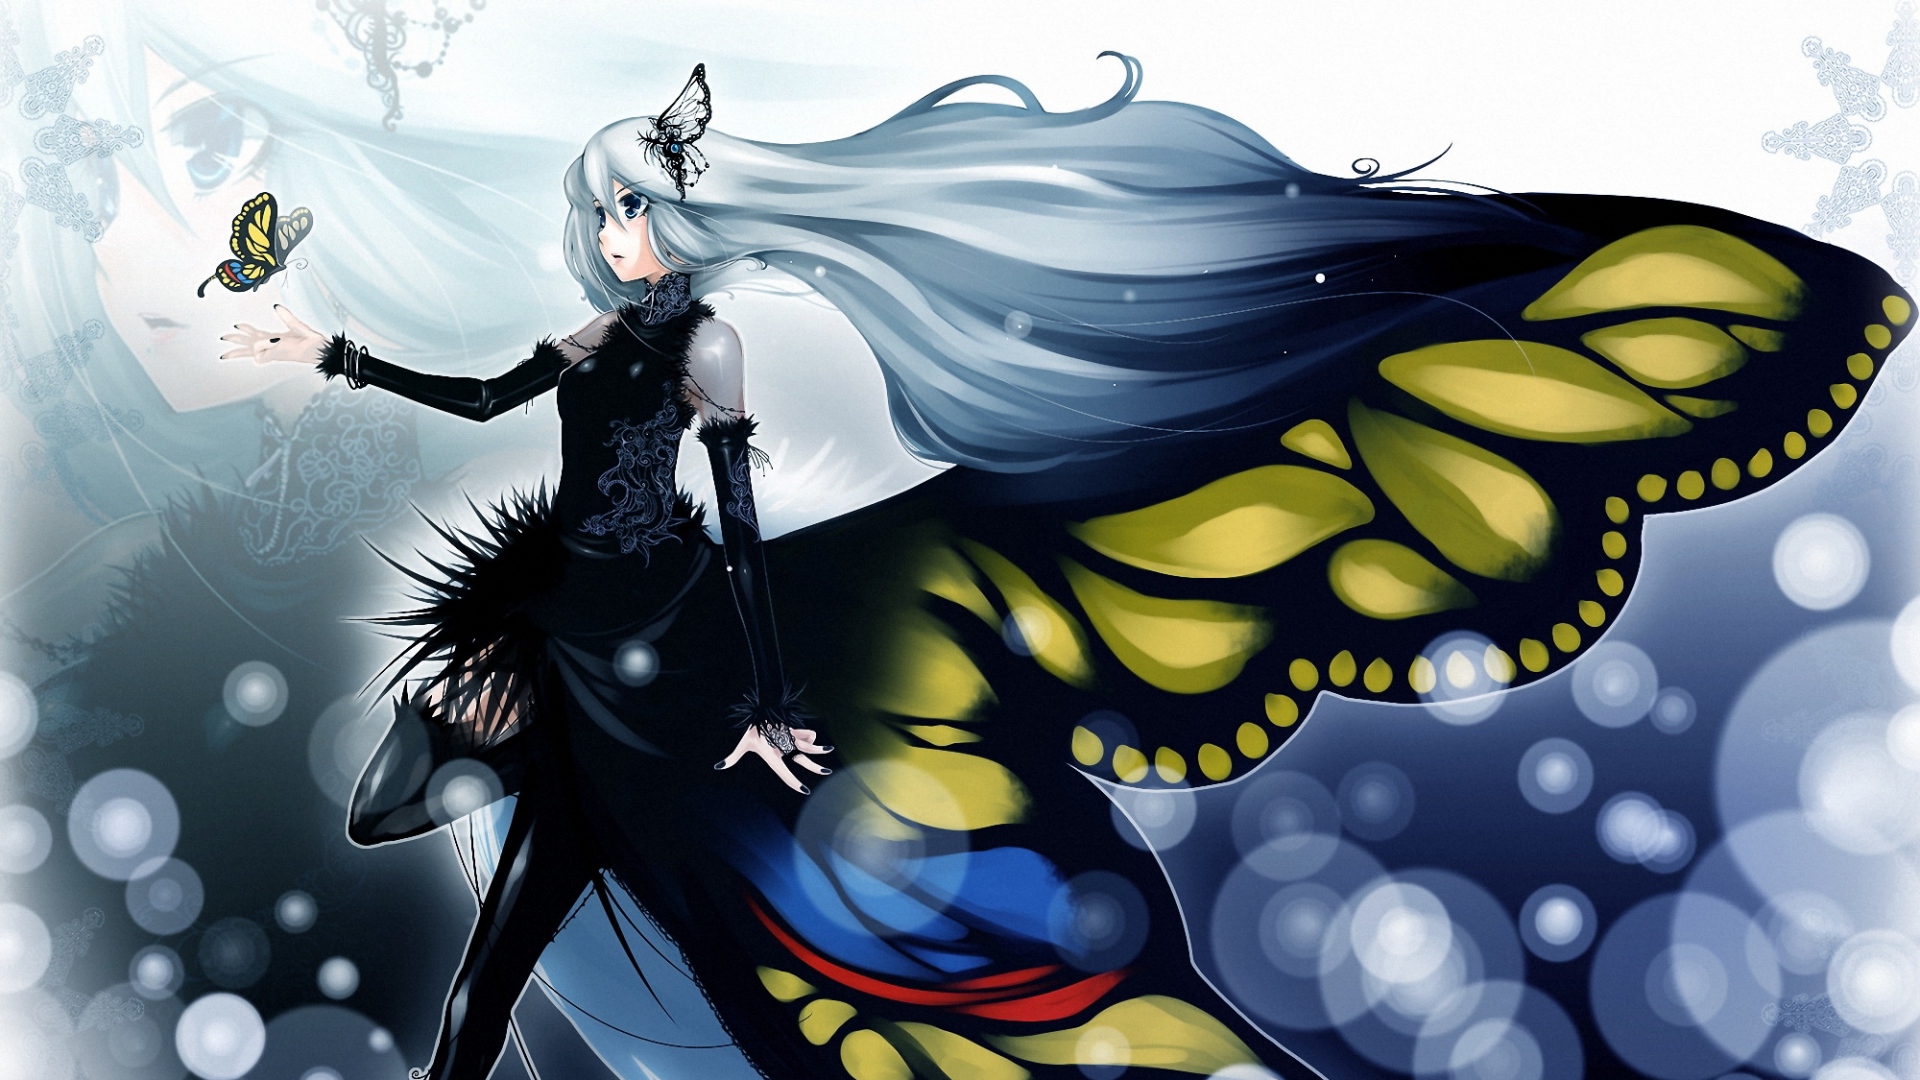 butterfly girl wallpaper,fictional character,cg artwork,cartoon,illustration,art